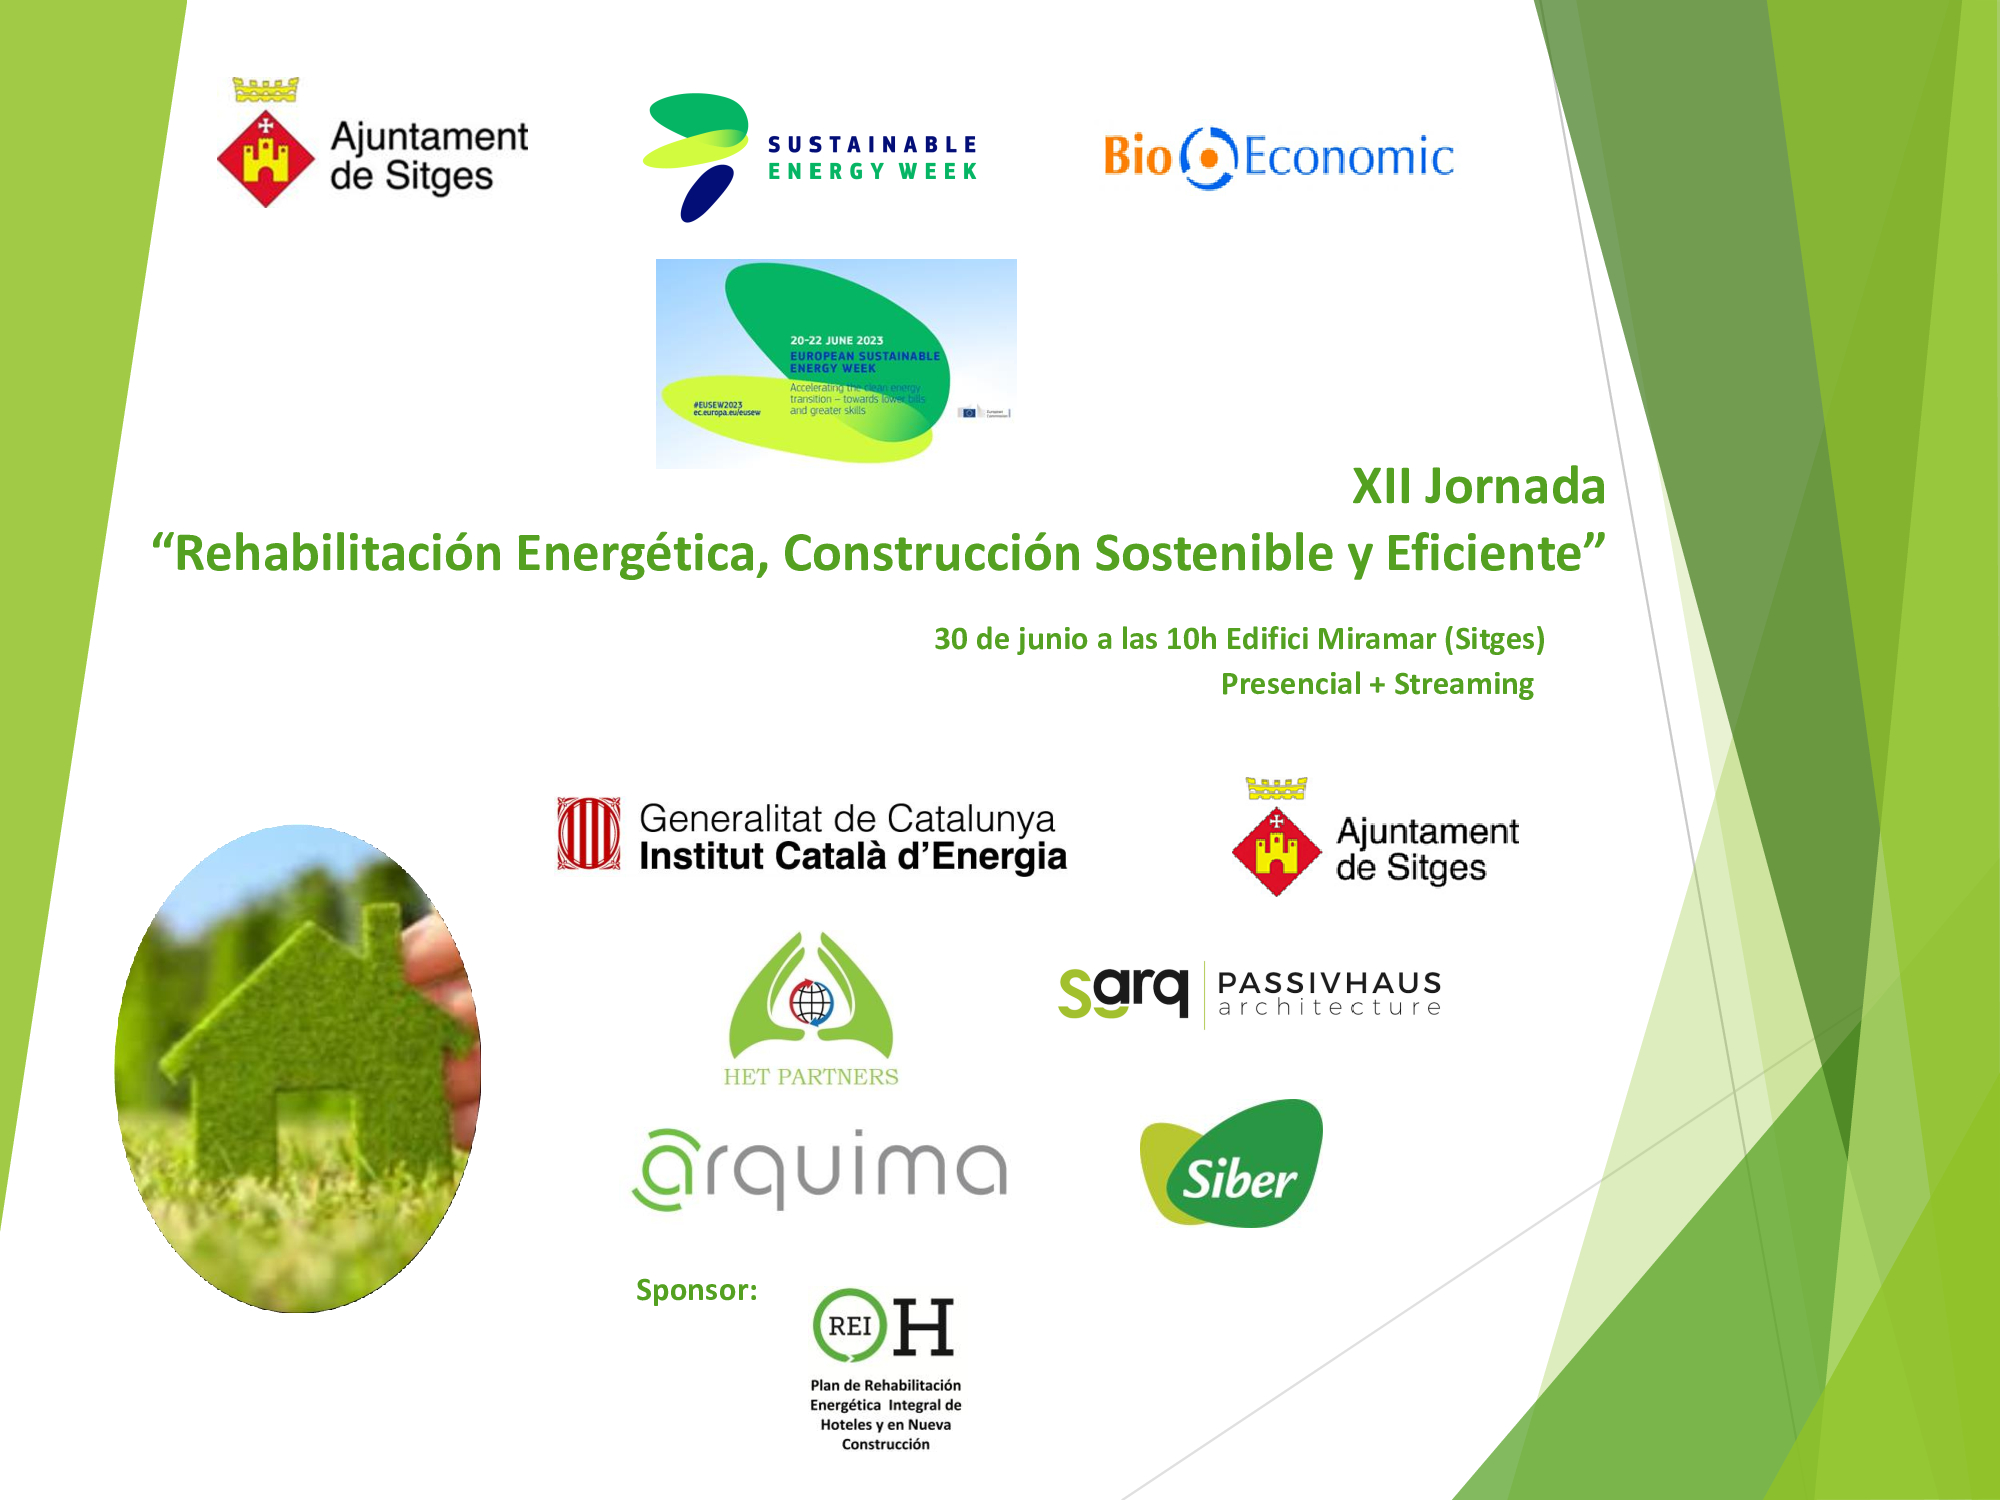 XII Jornada BioEconomic “Rehabilitación Energética, Construcción Sostenible y Eficiente” Sitges 2023